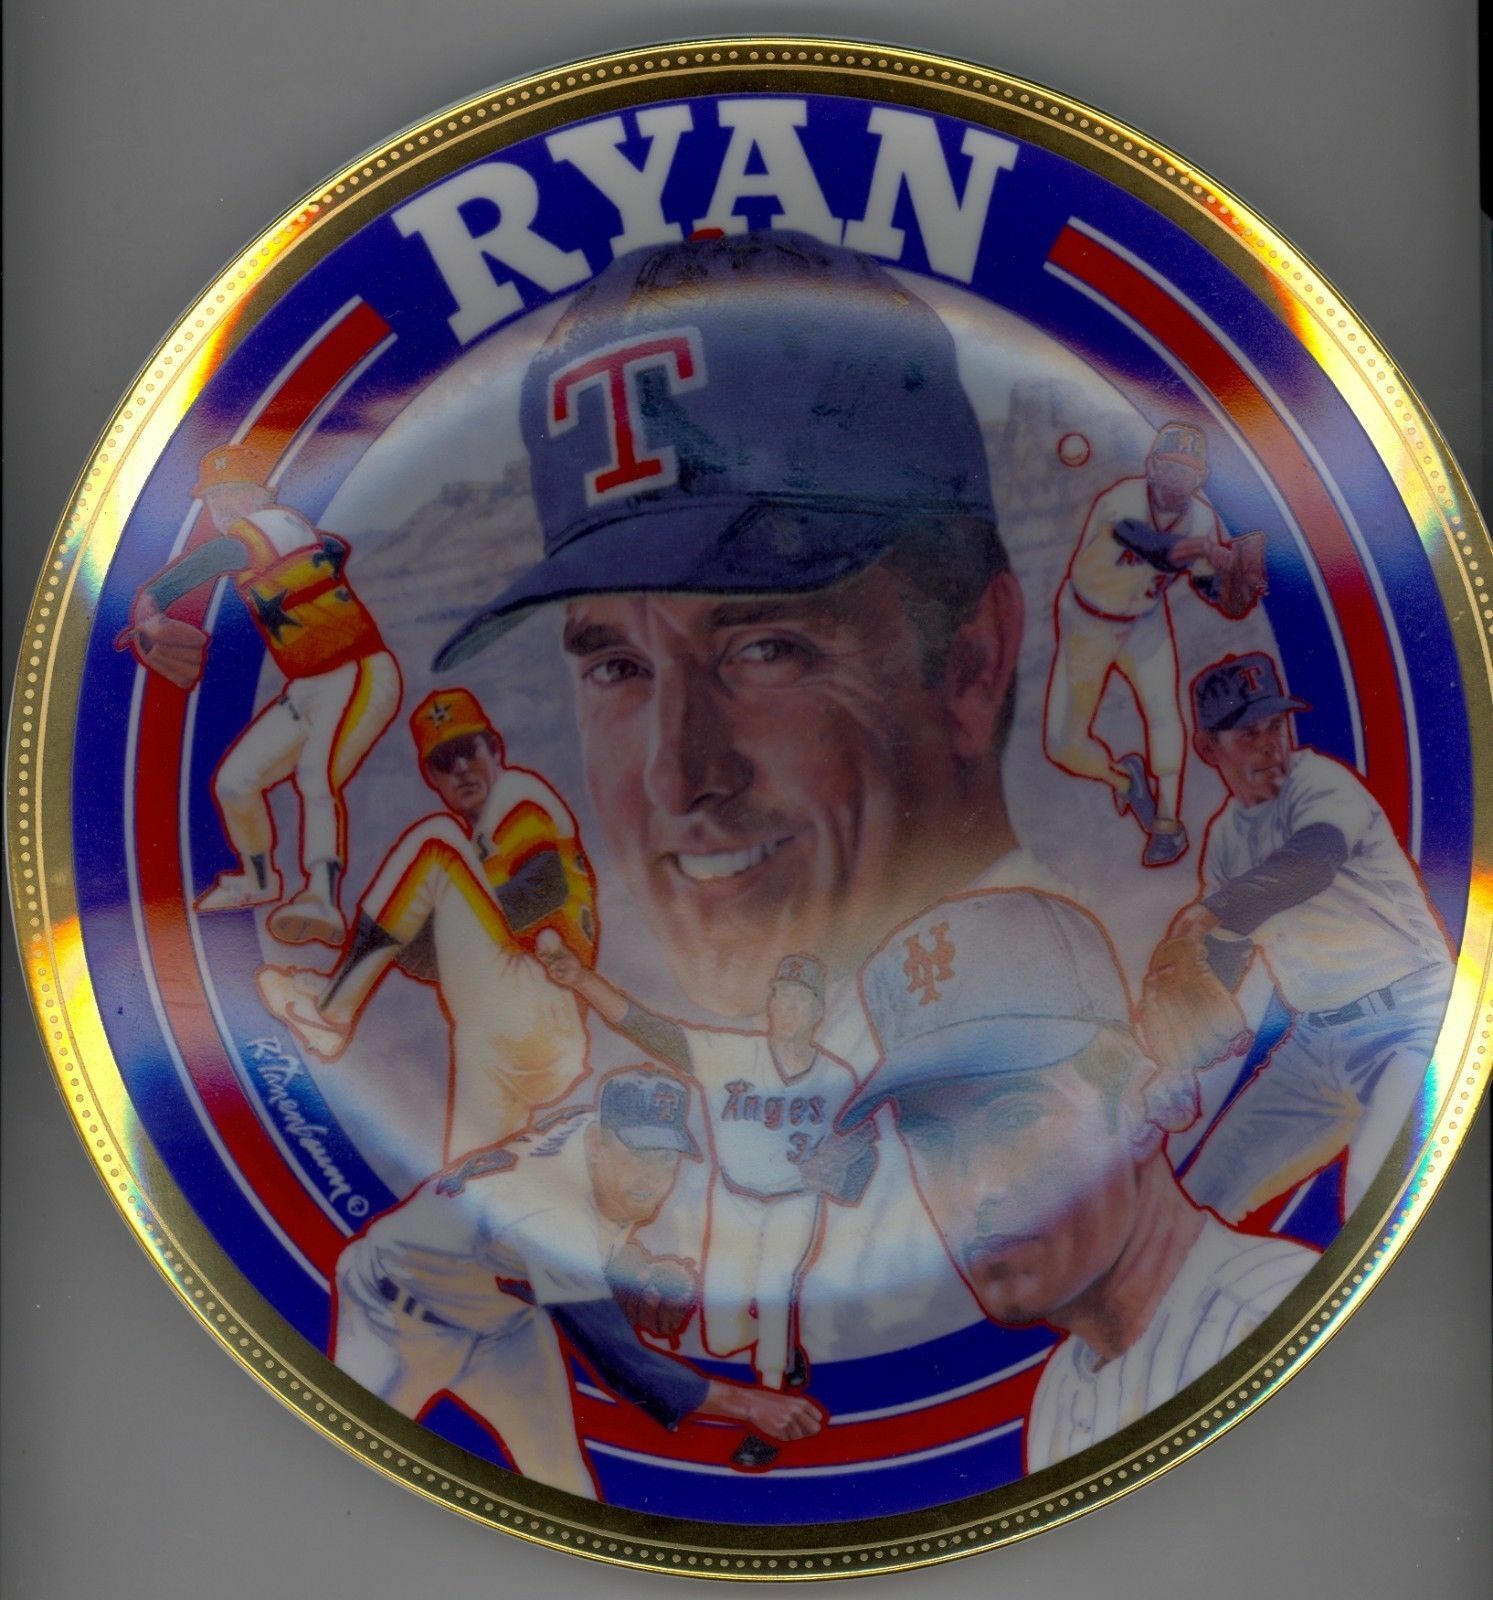 1993 NOLAN RYAN "Farewell" Collectible Gold Edition Plate TEXAS RANGERS MLB COA Image 2